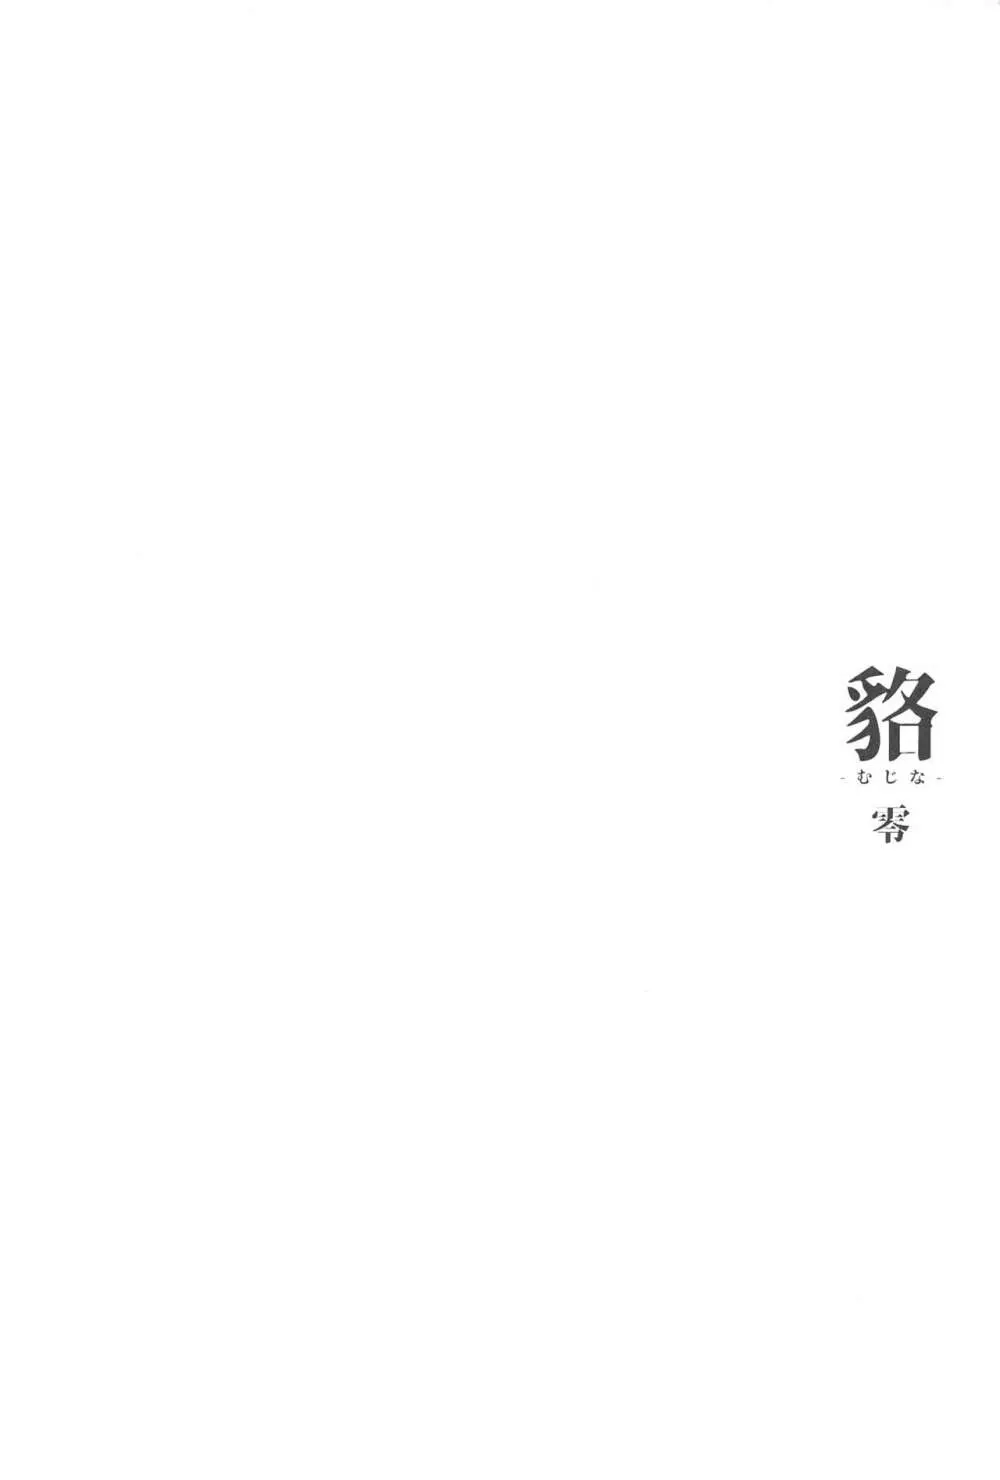 [怪奇日蝕 (綾野なおと)] 貉-むじな-零 [2019年5月25日] 3ページ